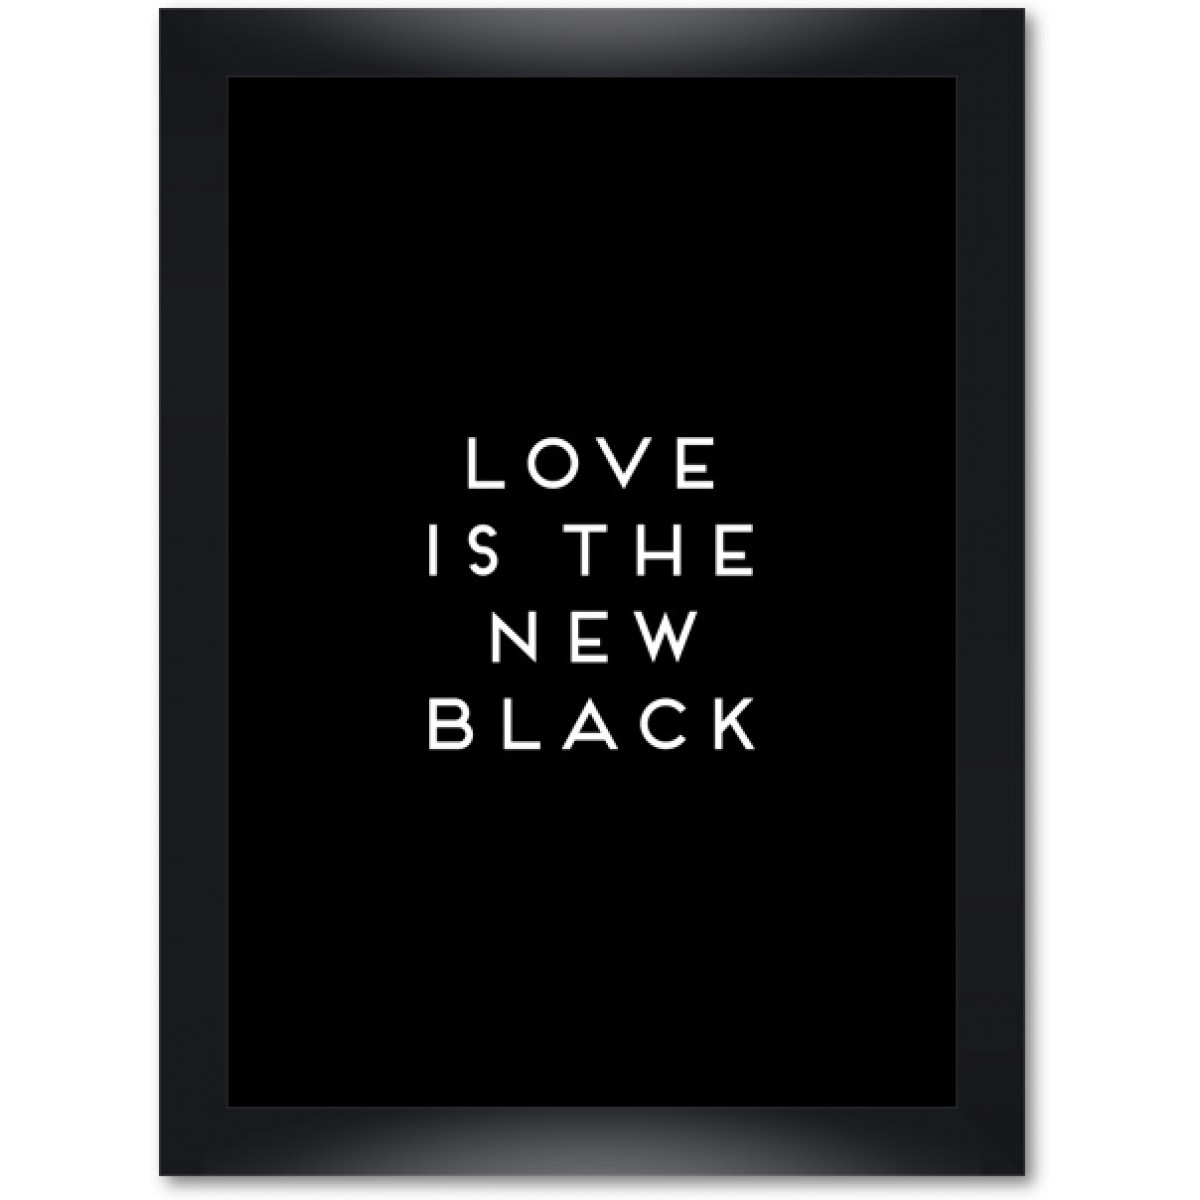 Love is the new black - Motiv "All Black" gerahmt DIN A4